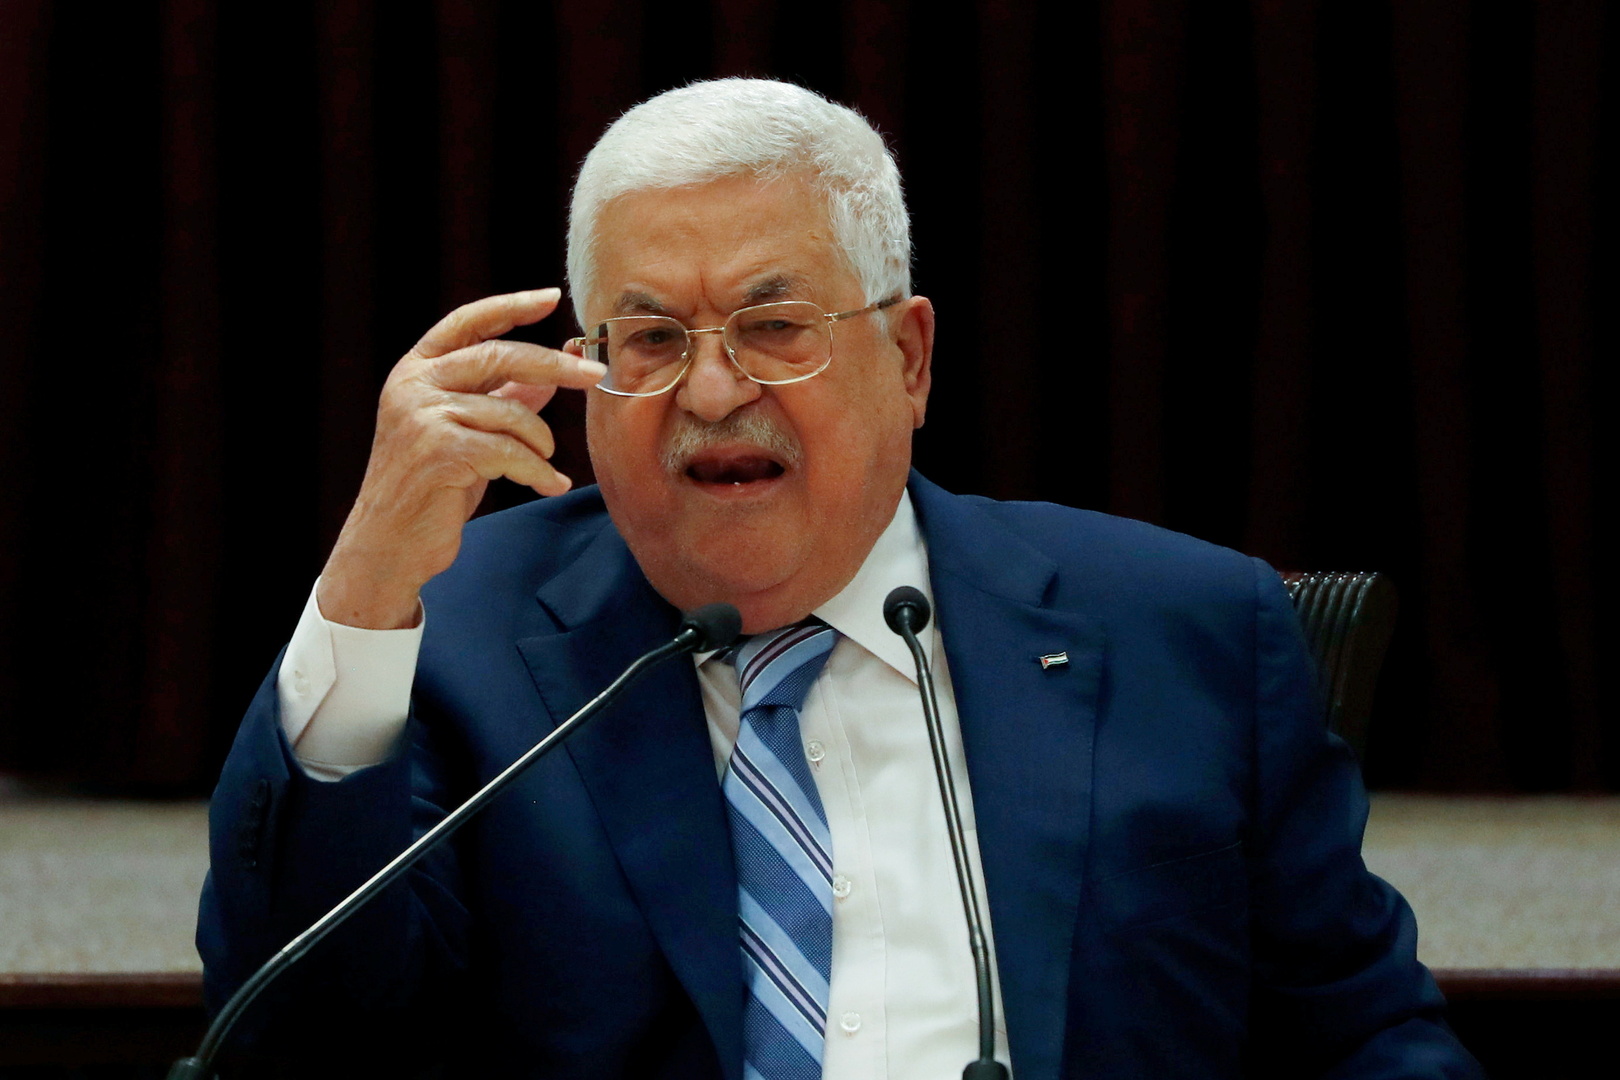 عباس: رفض إسرائيل لحل الدولتين يفرض علينا العودة للمطالبة بقرار التقسيم عام 1947